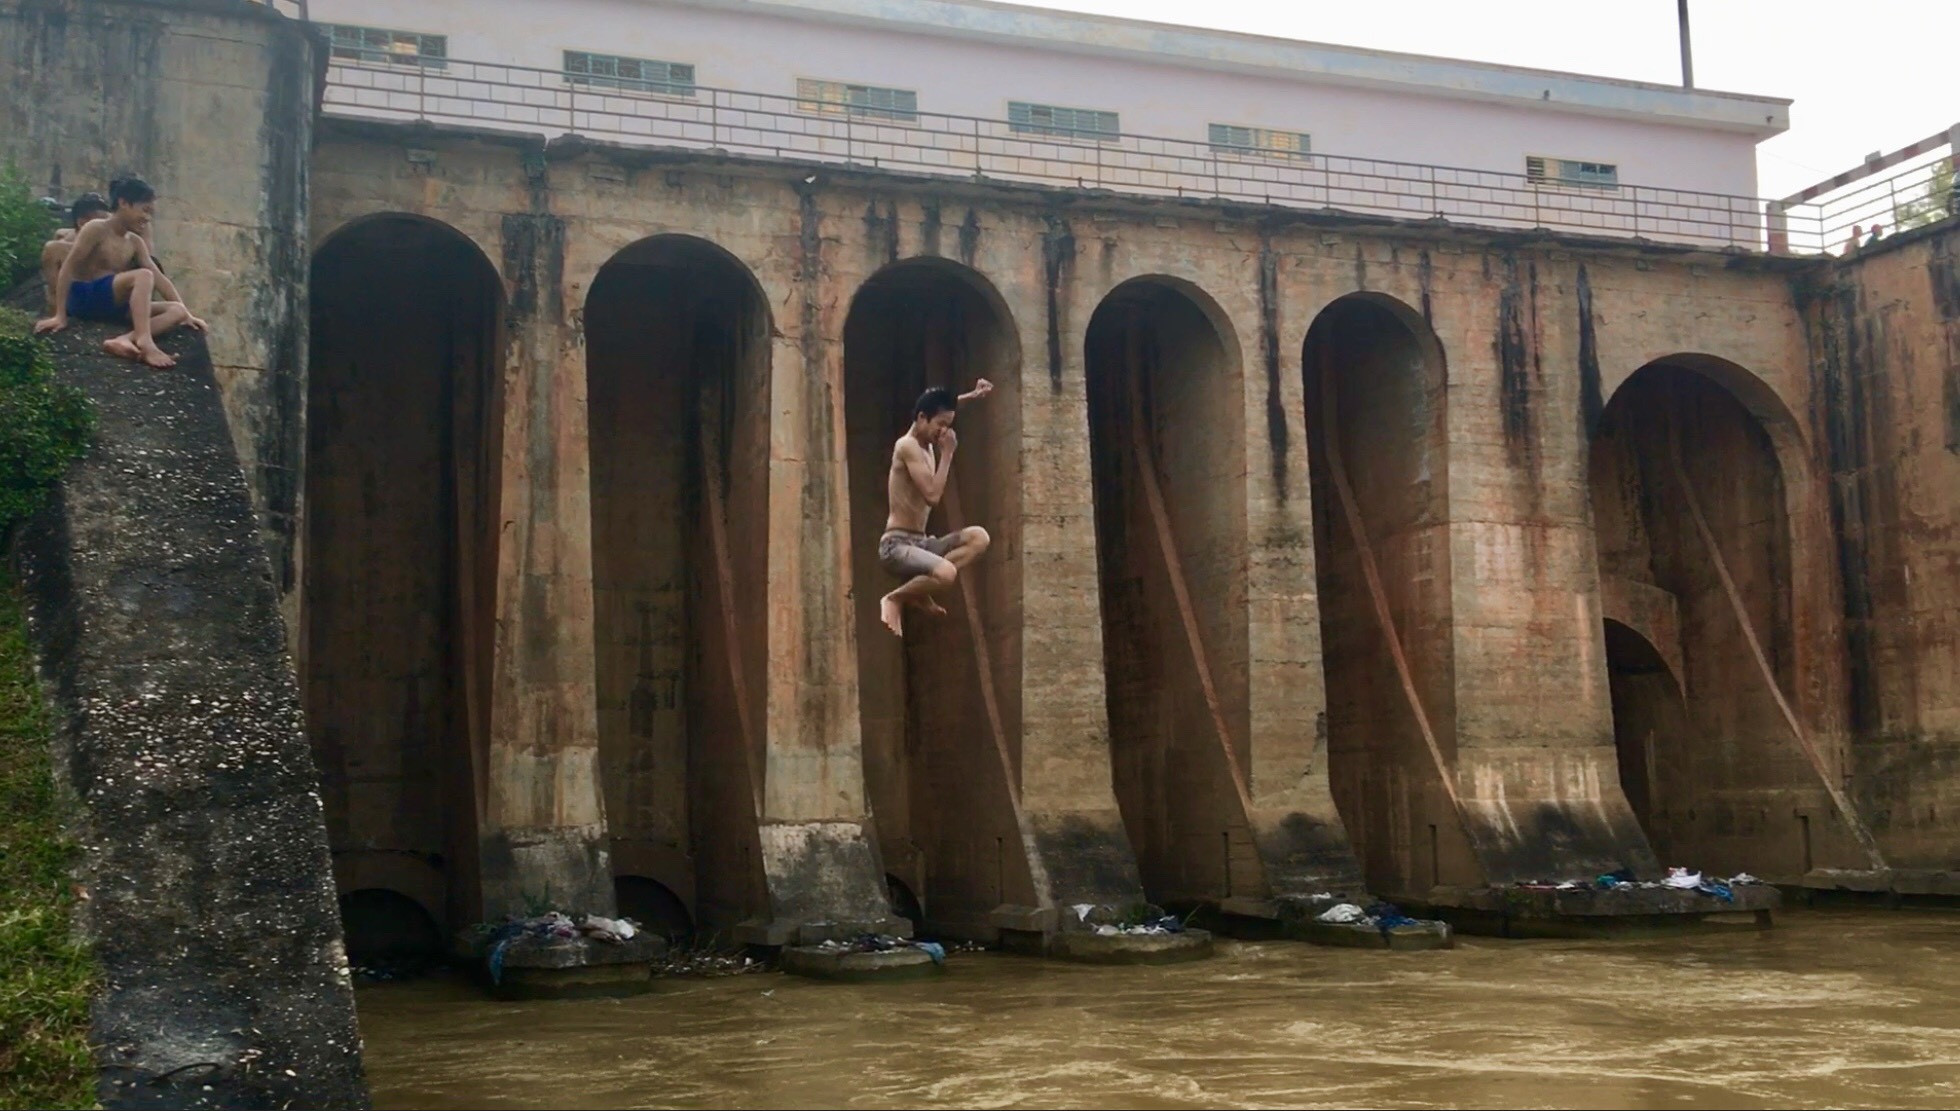 Cú nhảy từ độ cao trên 15 m, nước mặt sông rất quẩn dễ bị cuốn vào các cửa cống. Ảnh: Lê Ngọc Phương